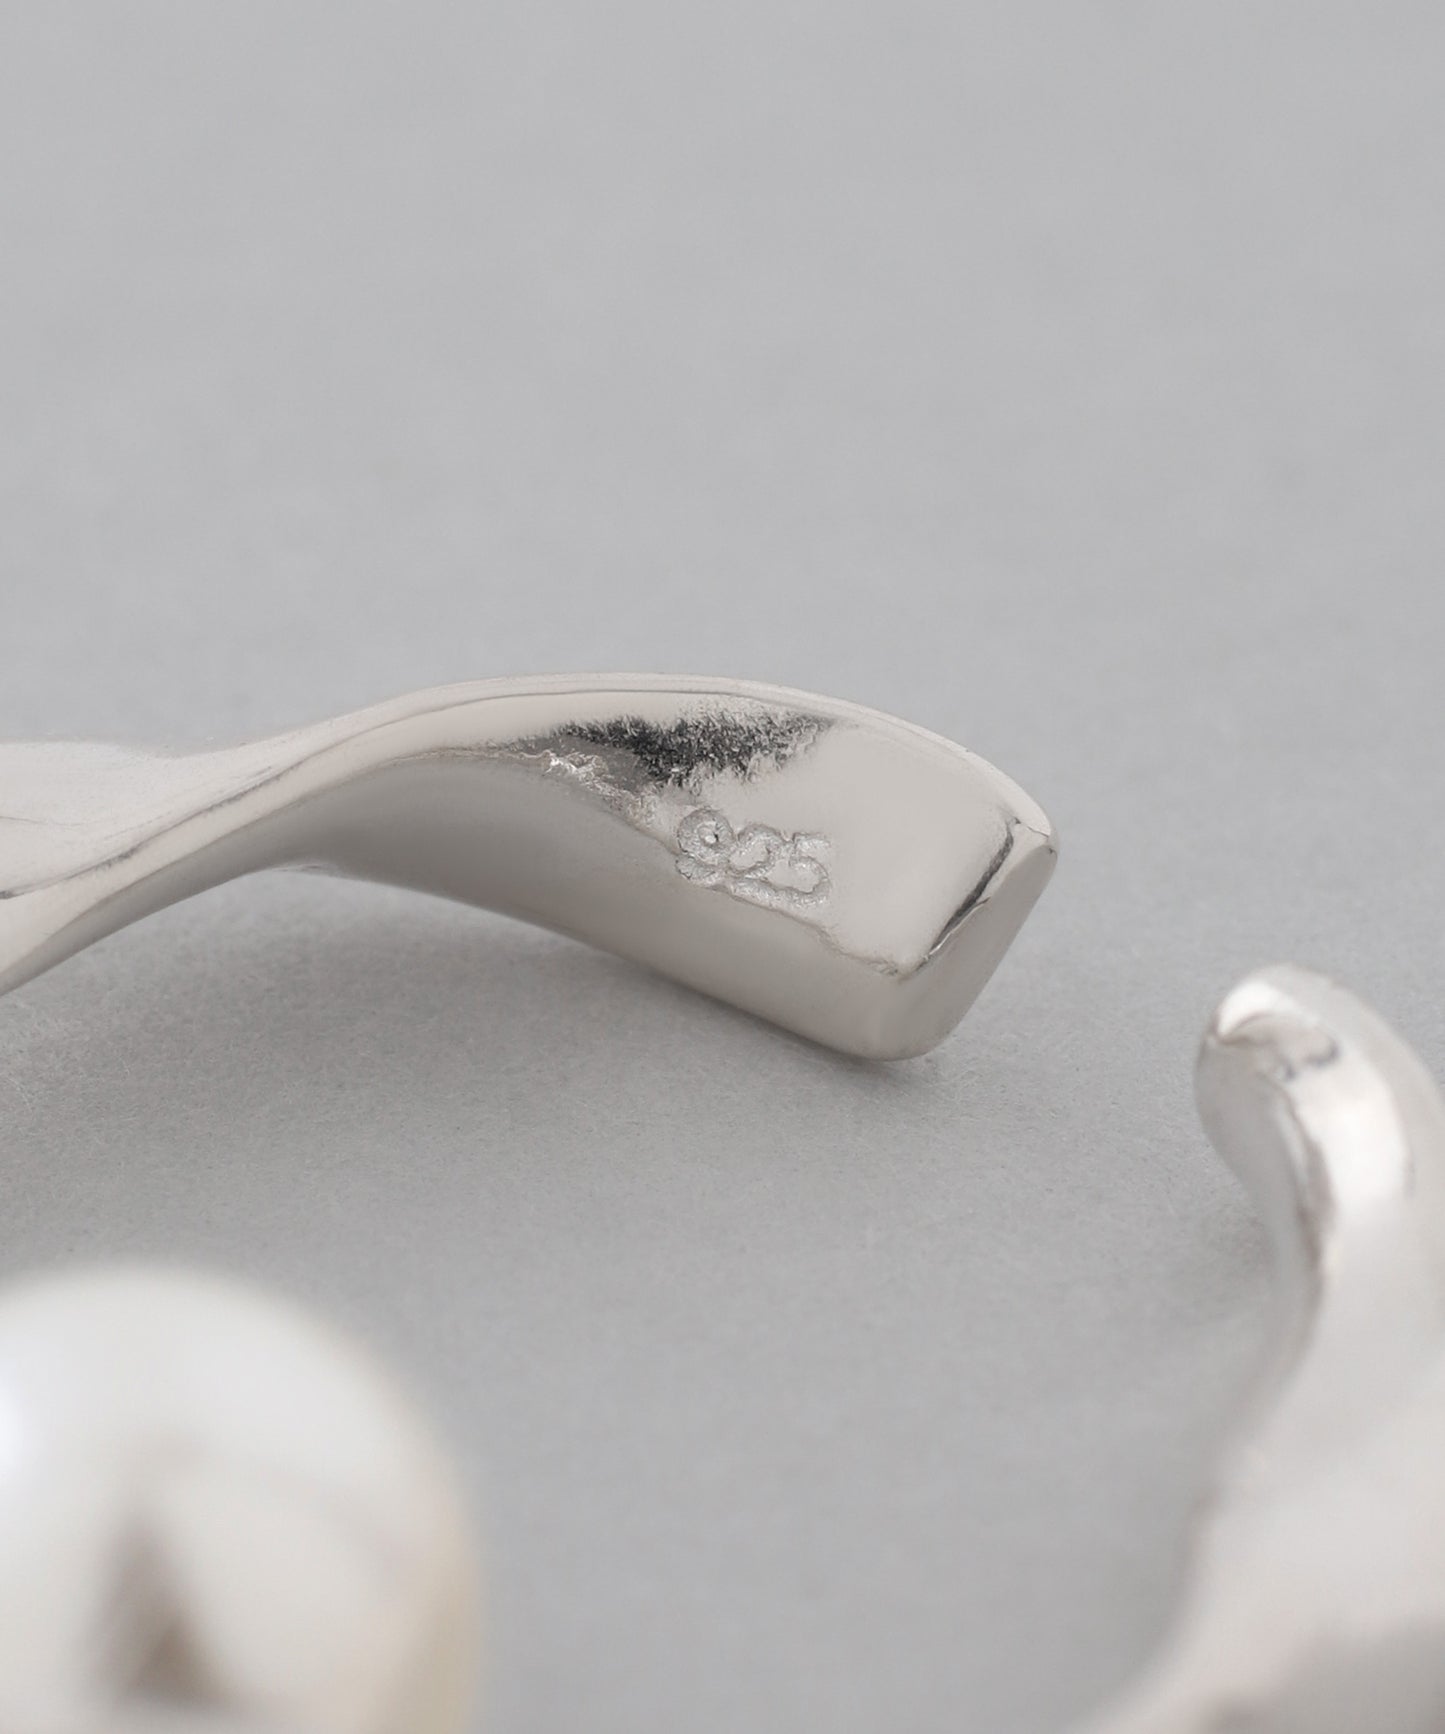 Pearl × Twisted Ear cuff [925 silver]